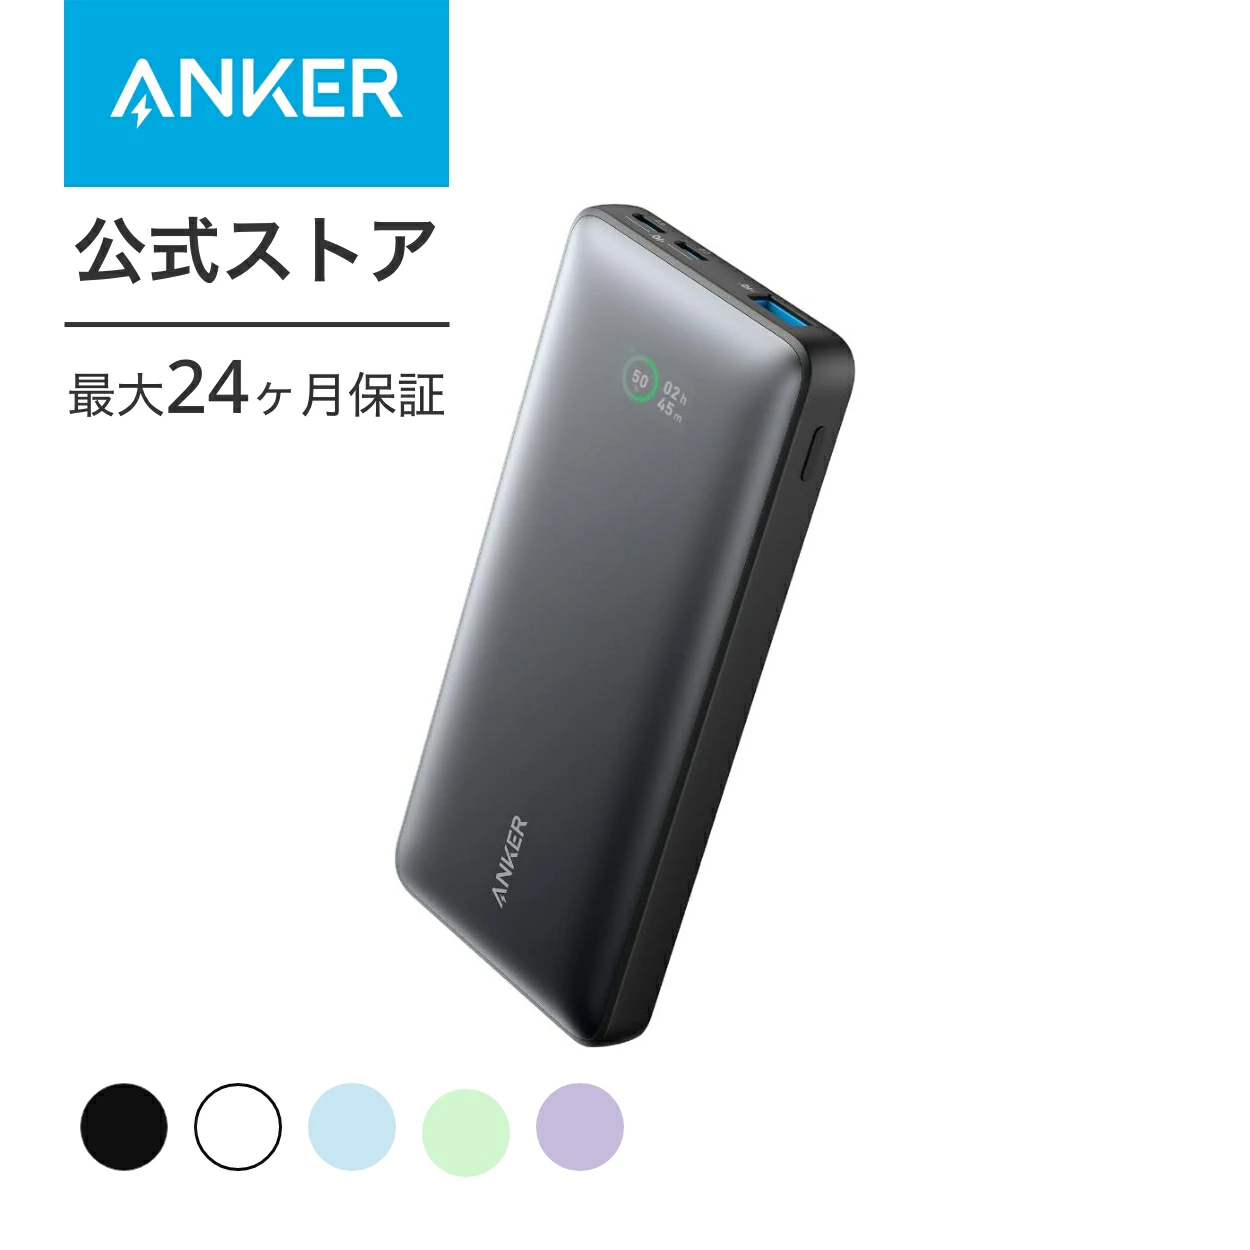 【楽天市場】Anker PowerCore 26800 (26800mAh 超大容量 